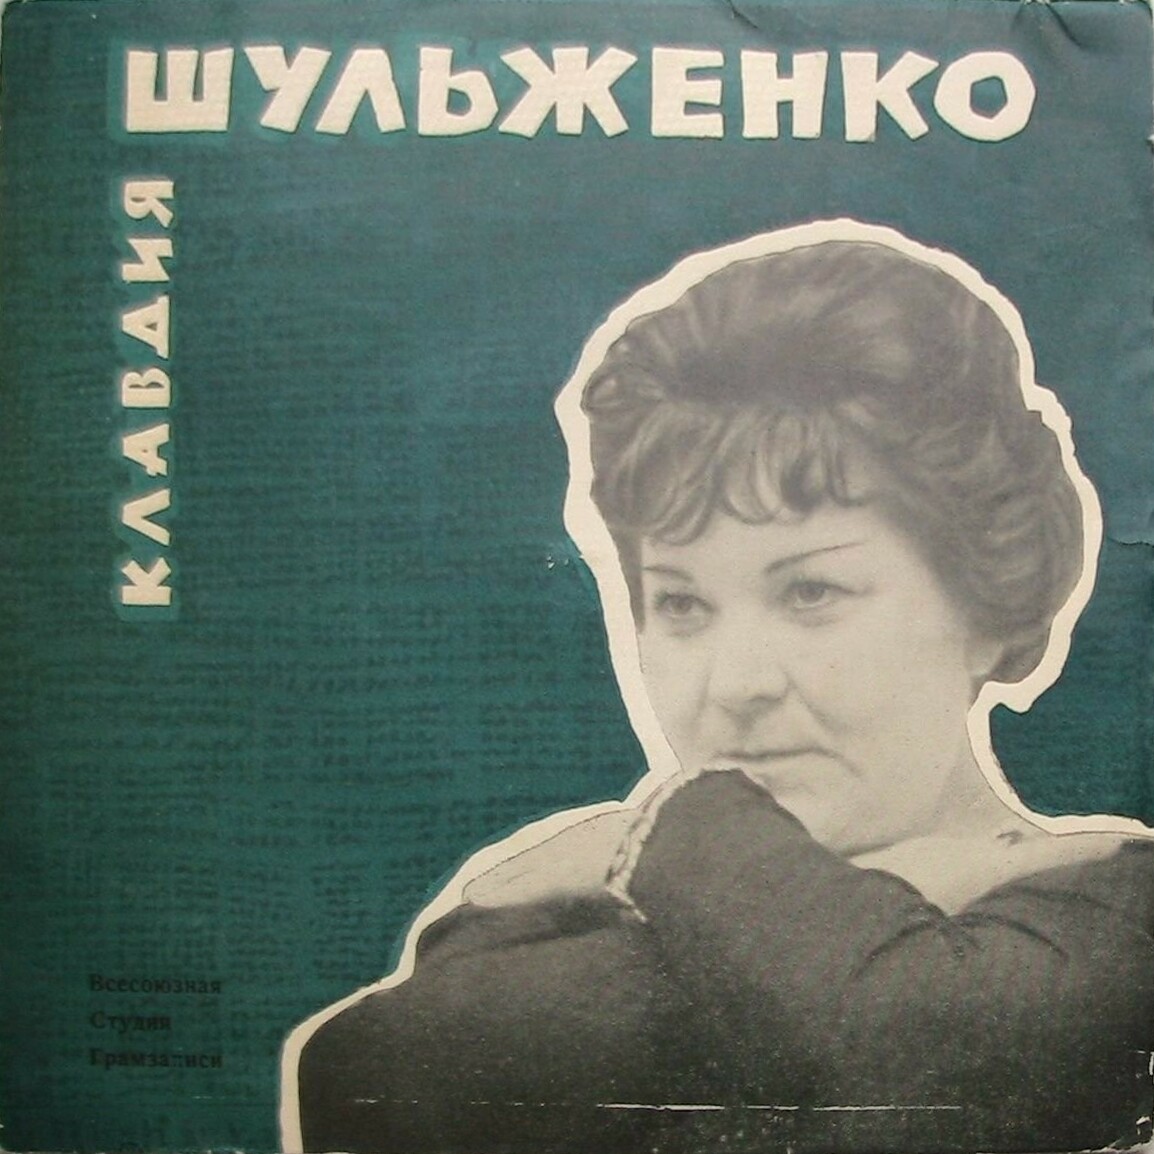 Клавдия Шульженко